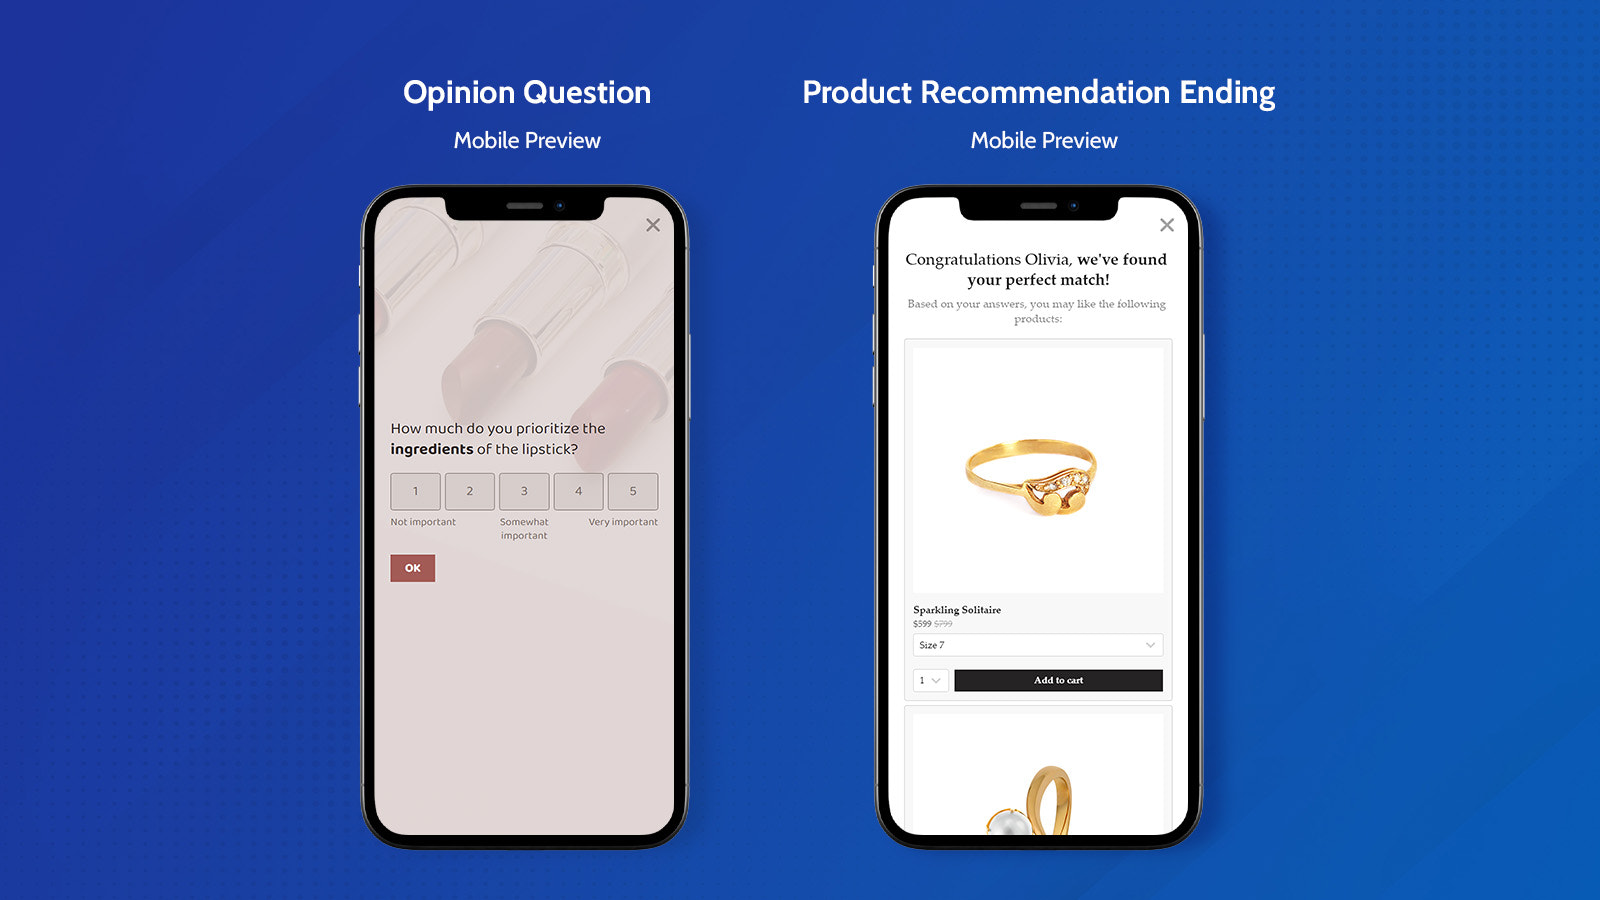 Mobile Vorschau einer Meinungs- und Produkt-Empfehlungsabschluss